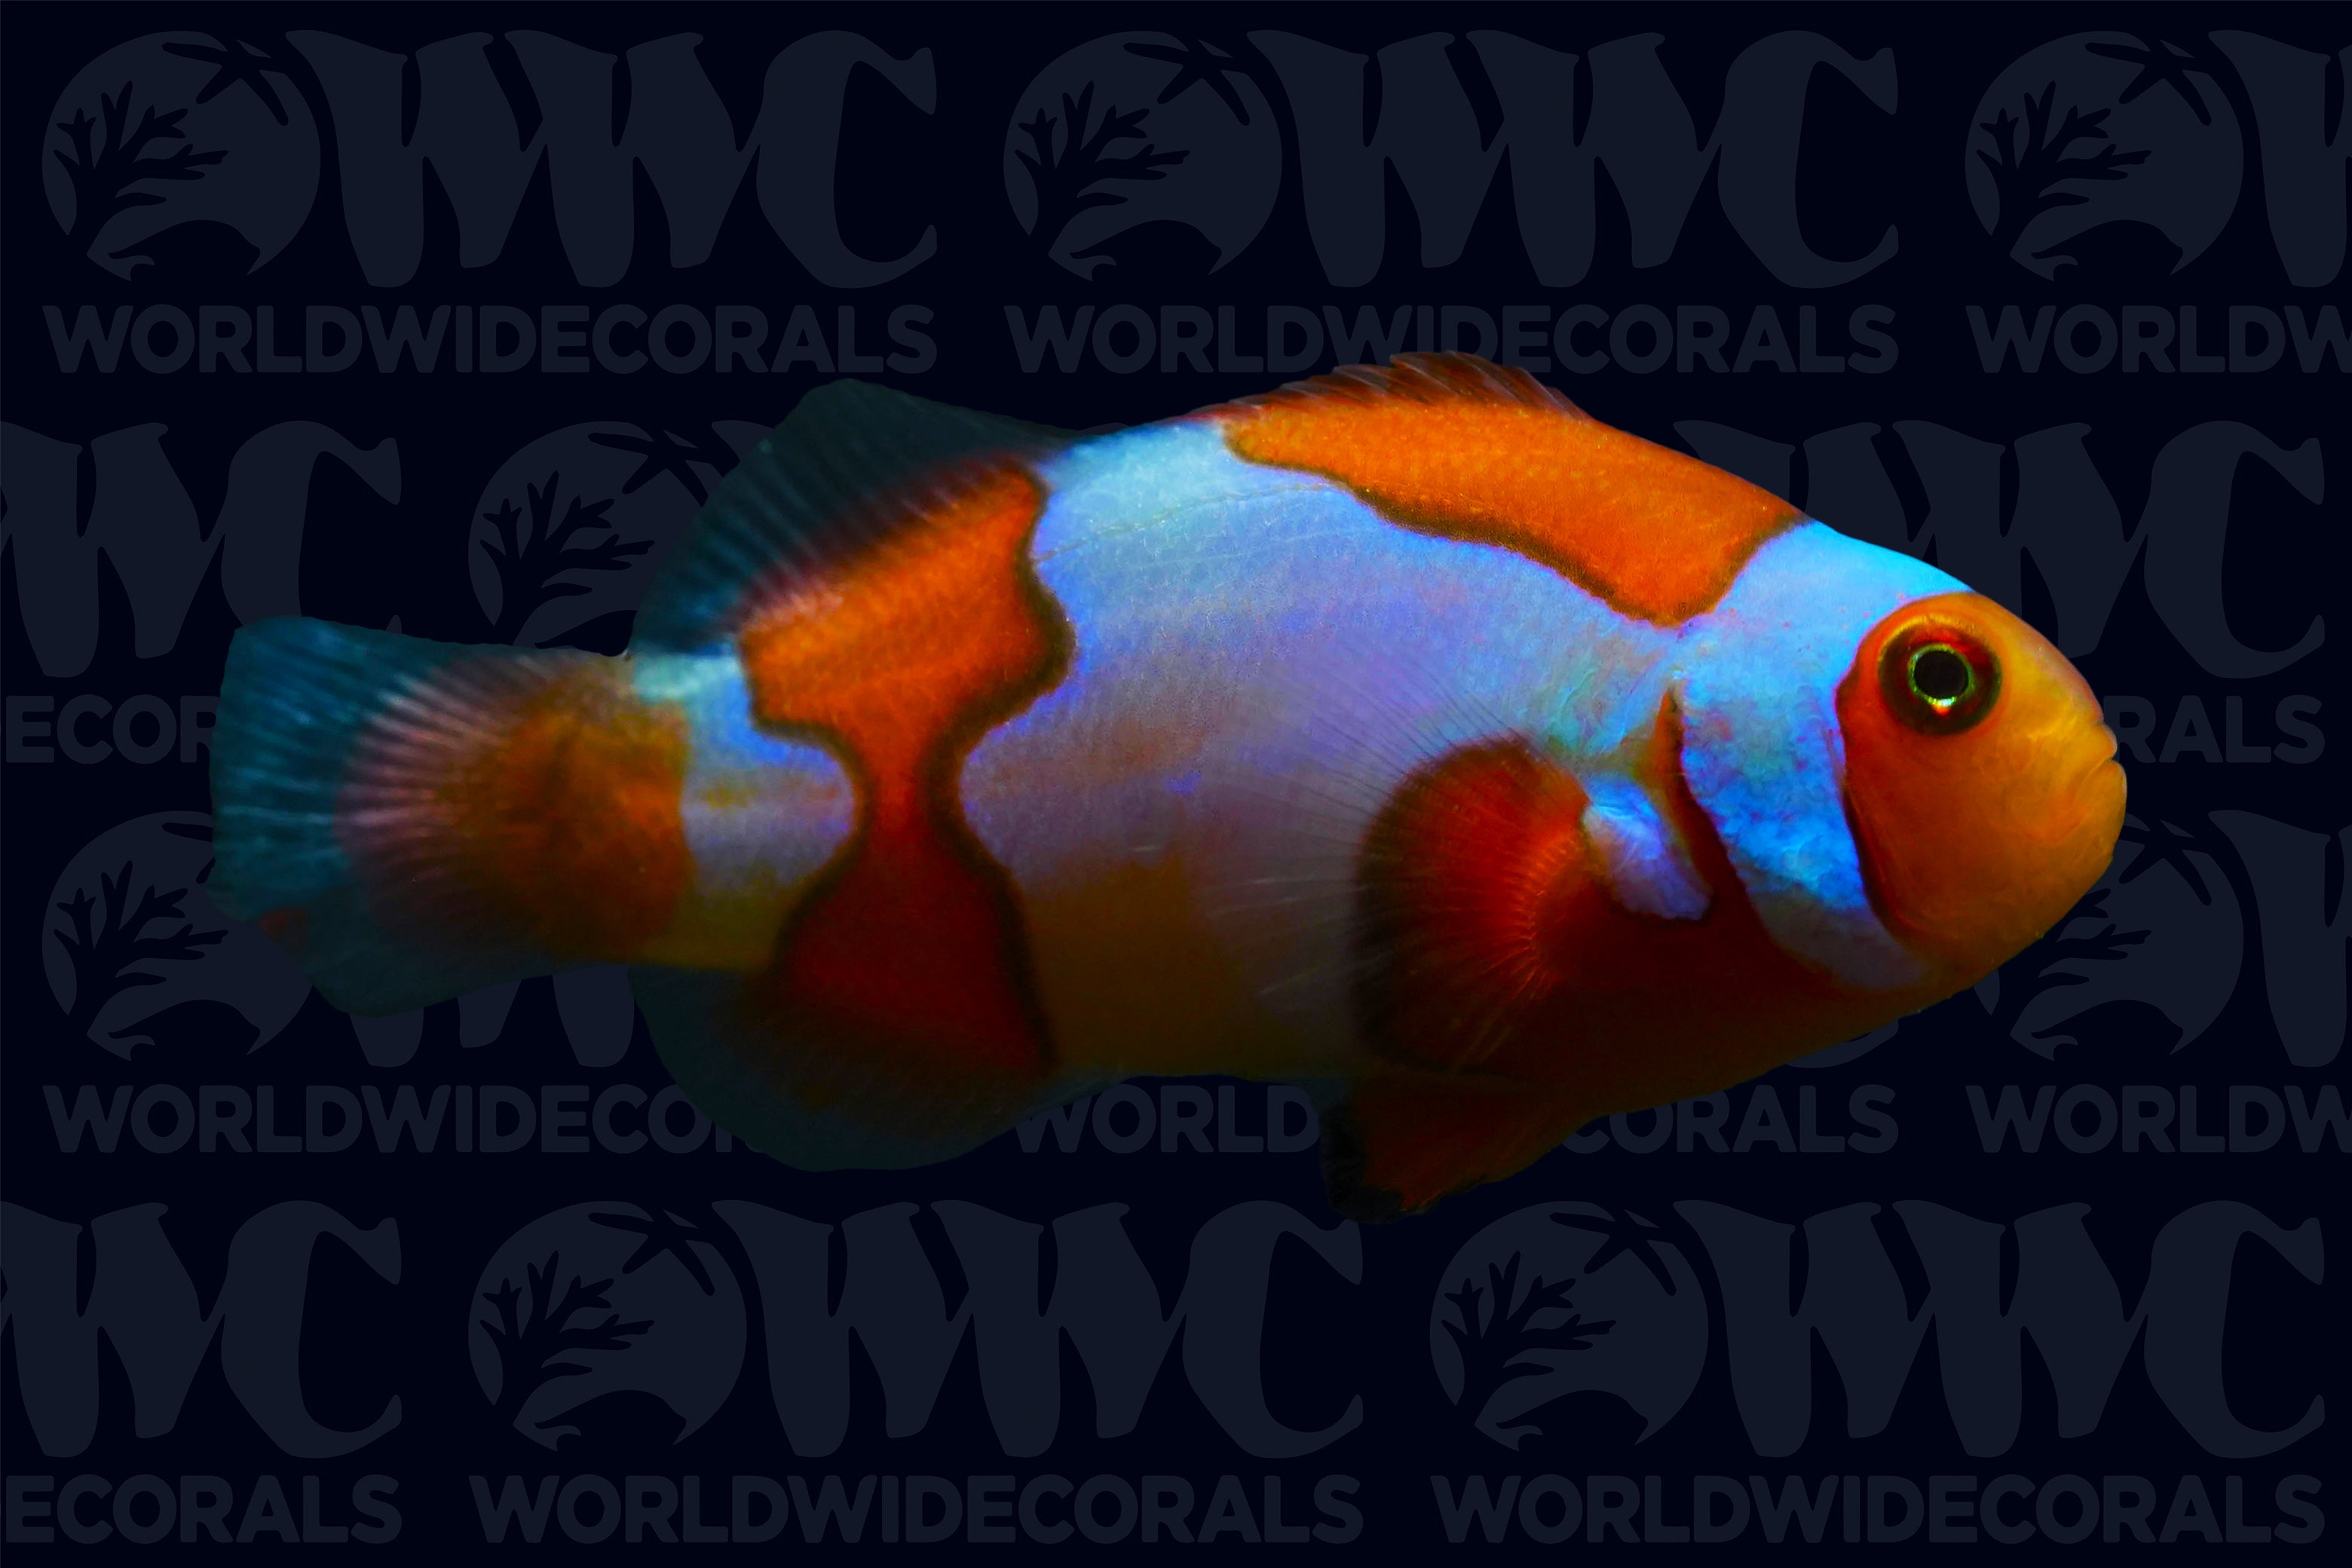 Picasso Percula Clownfish - Aquacultured - U.S.A.